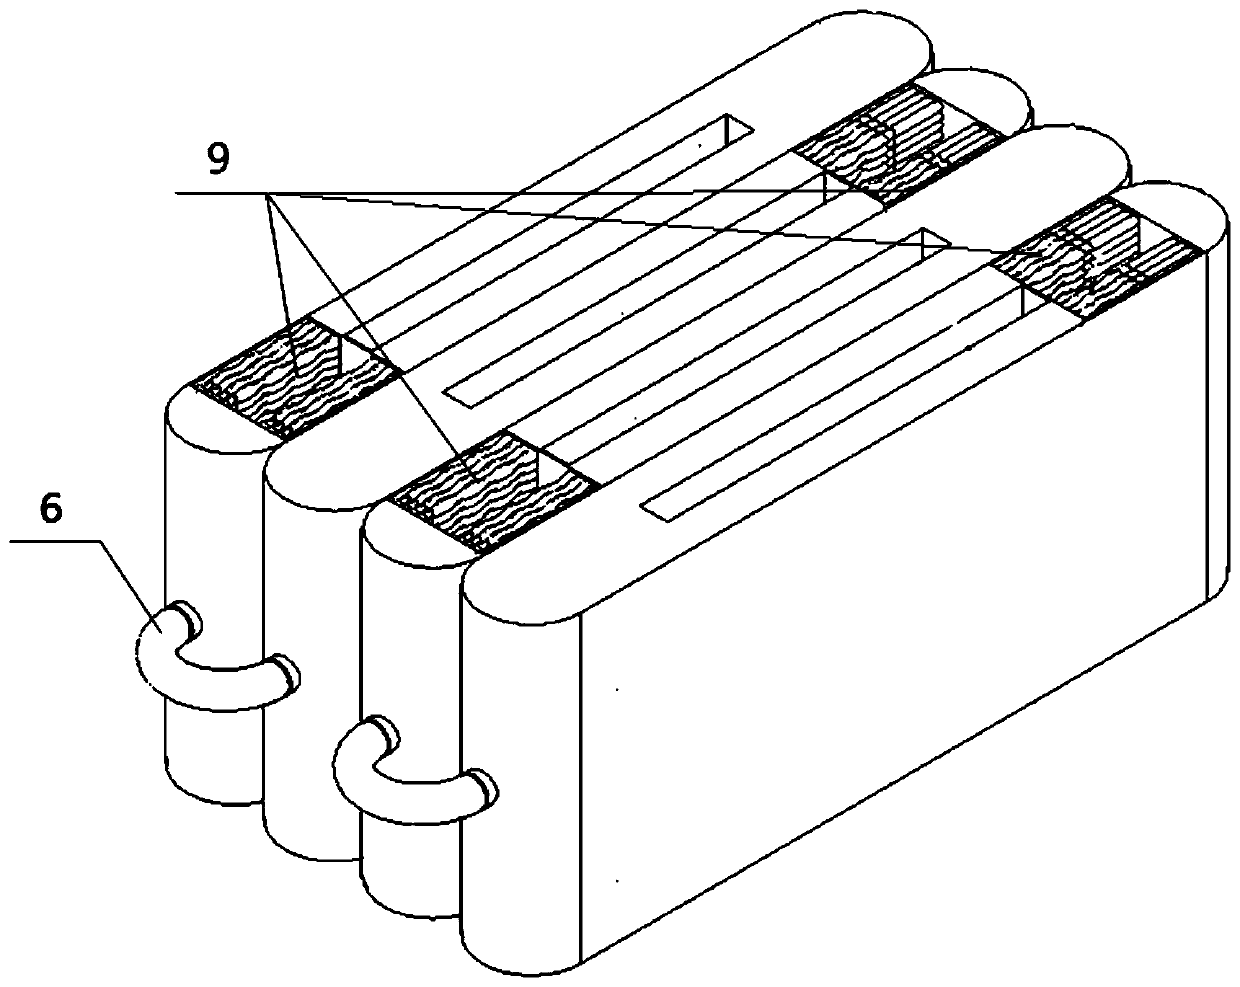 Modular efficient heat exchange structure